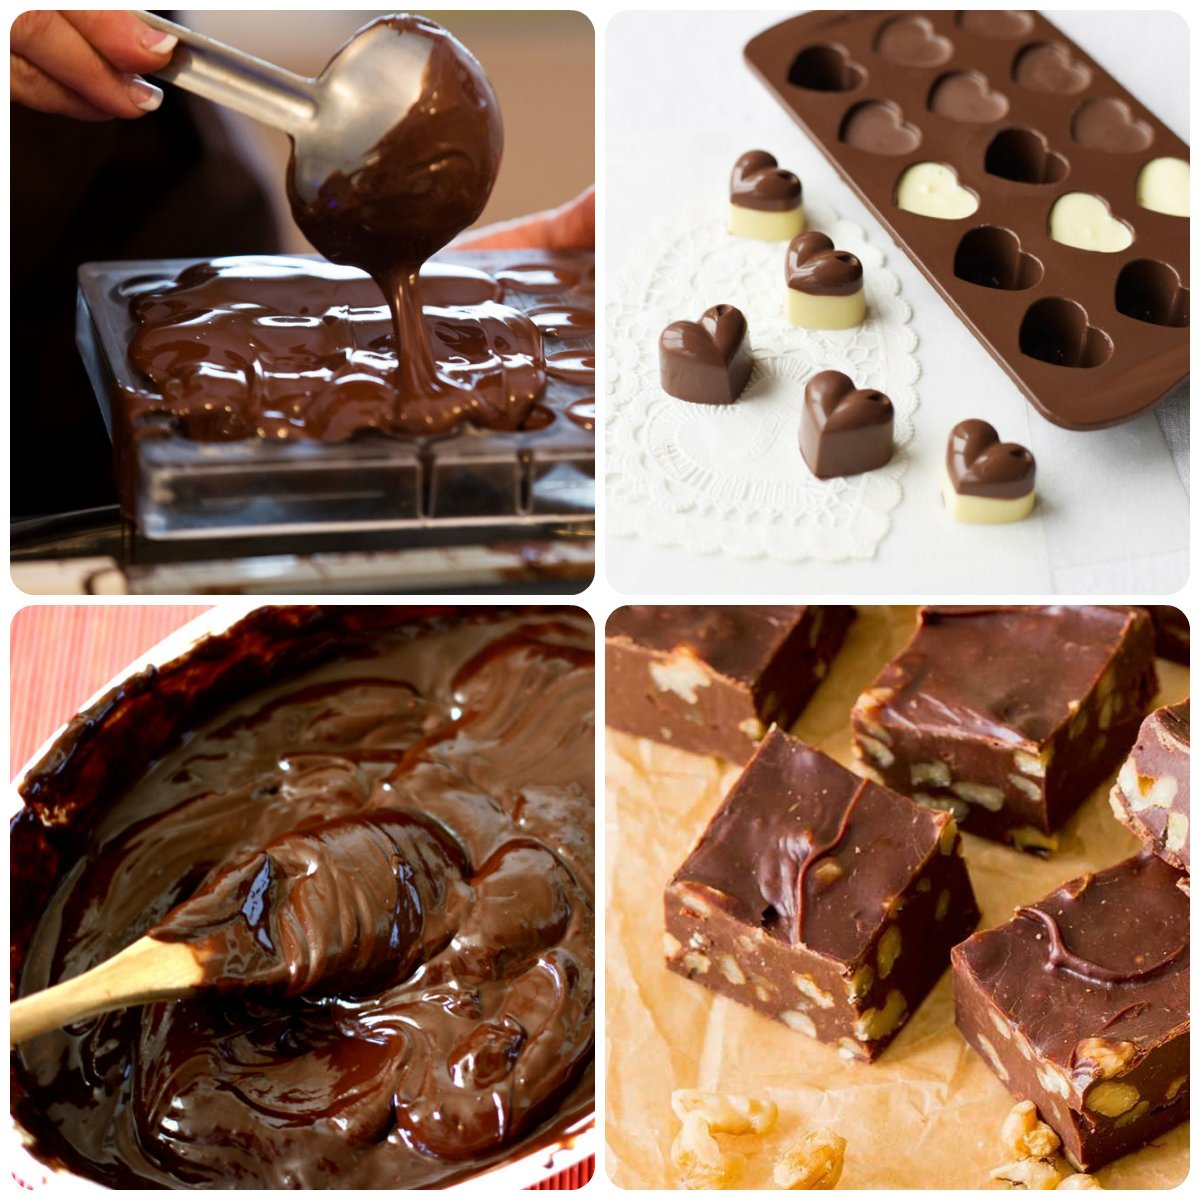 Домашняя плитка шоколада. Шоколад своими руками. Сладости домашнего приготовления. Домашний шоколад и конфеты. Конфеты домашнего приготовления шоколадные.